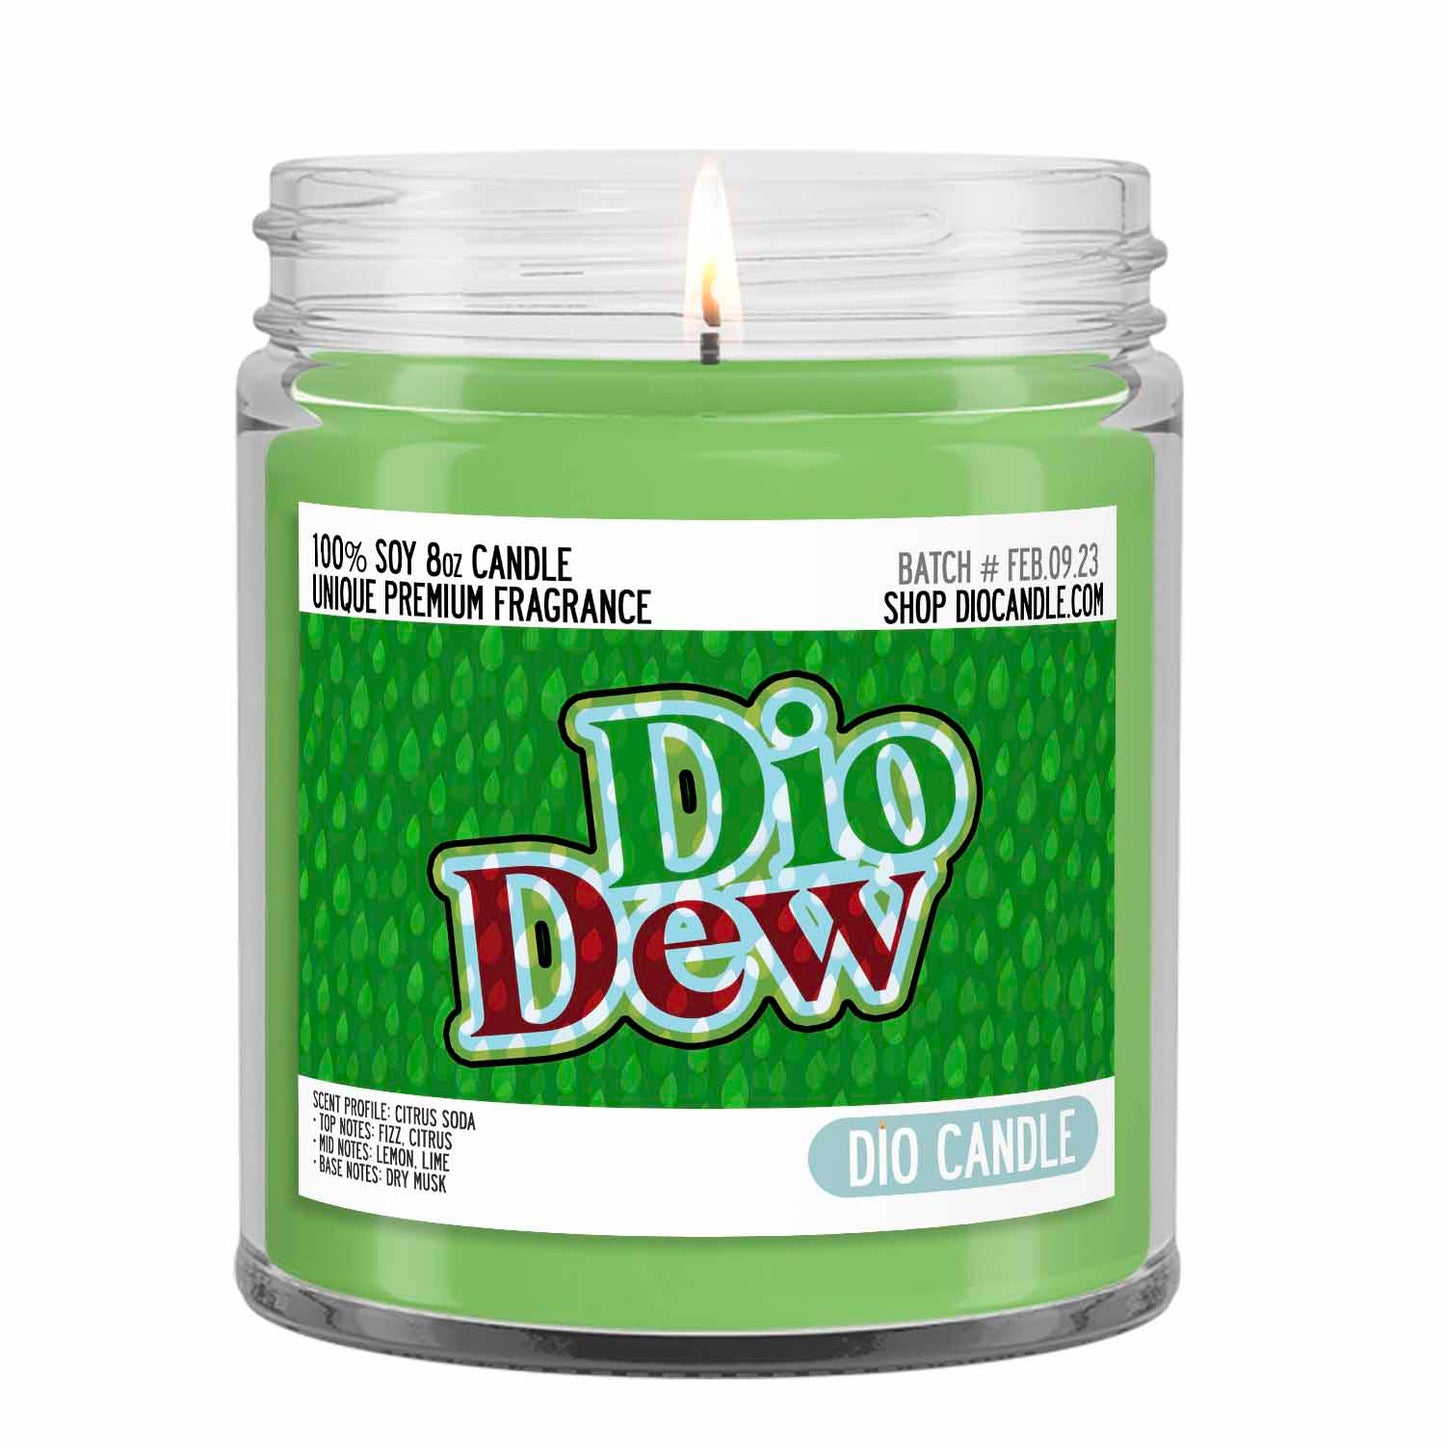 Dew Soda Candle